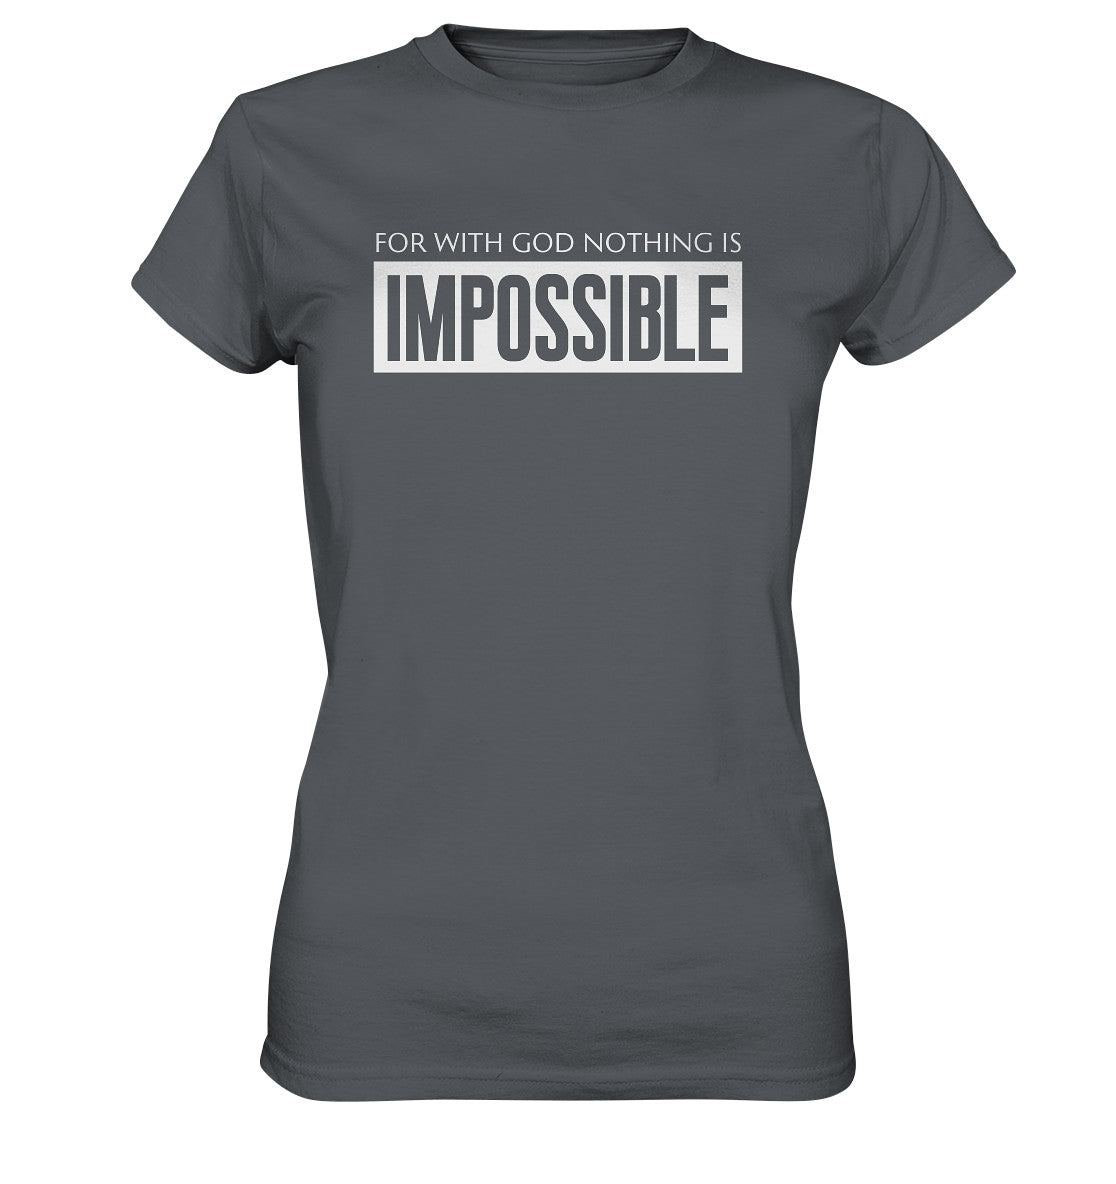 Lk 1,37 - IMPOSSIBLE - Ladies Premium Shirt